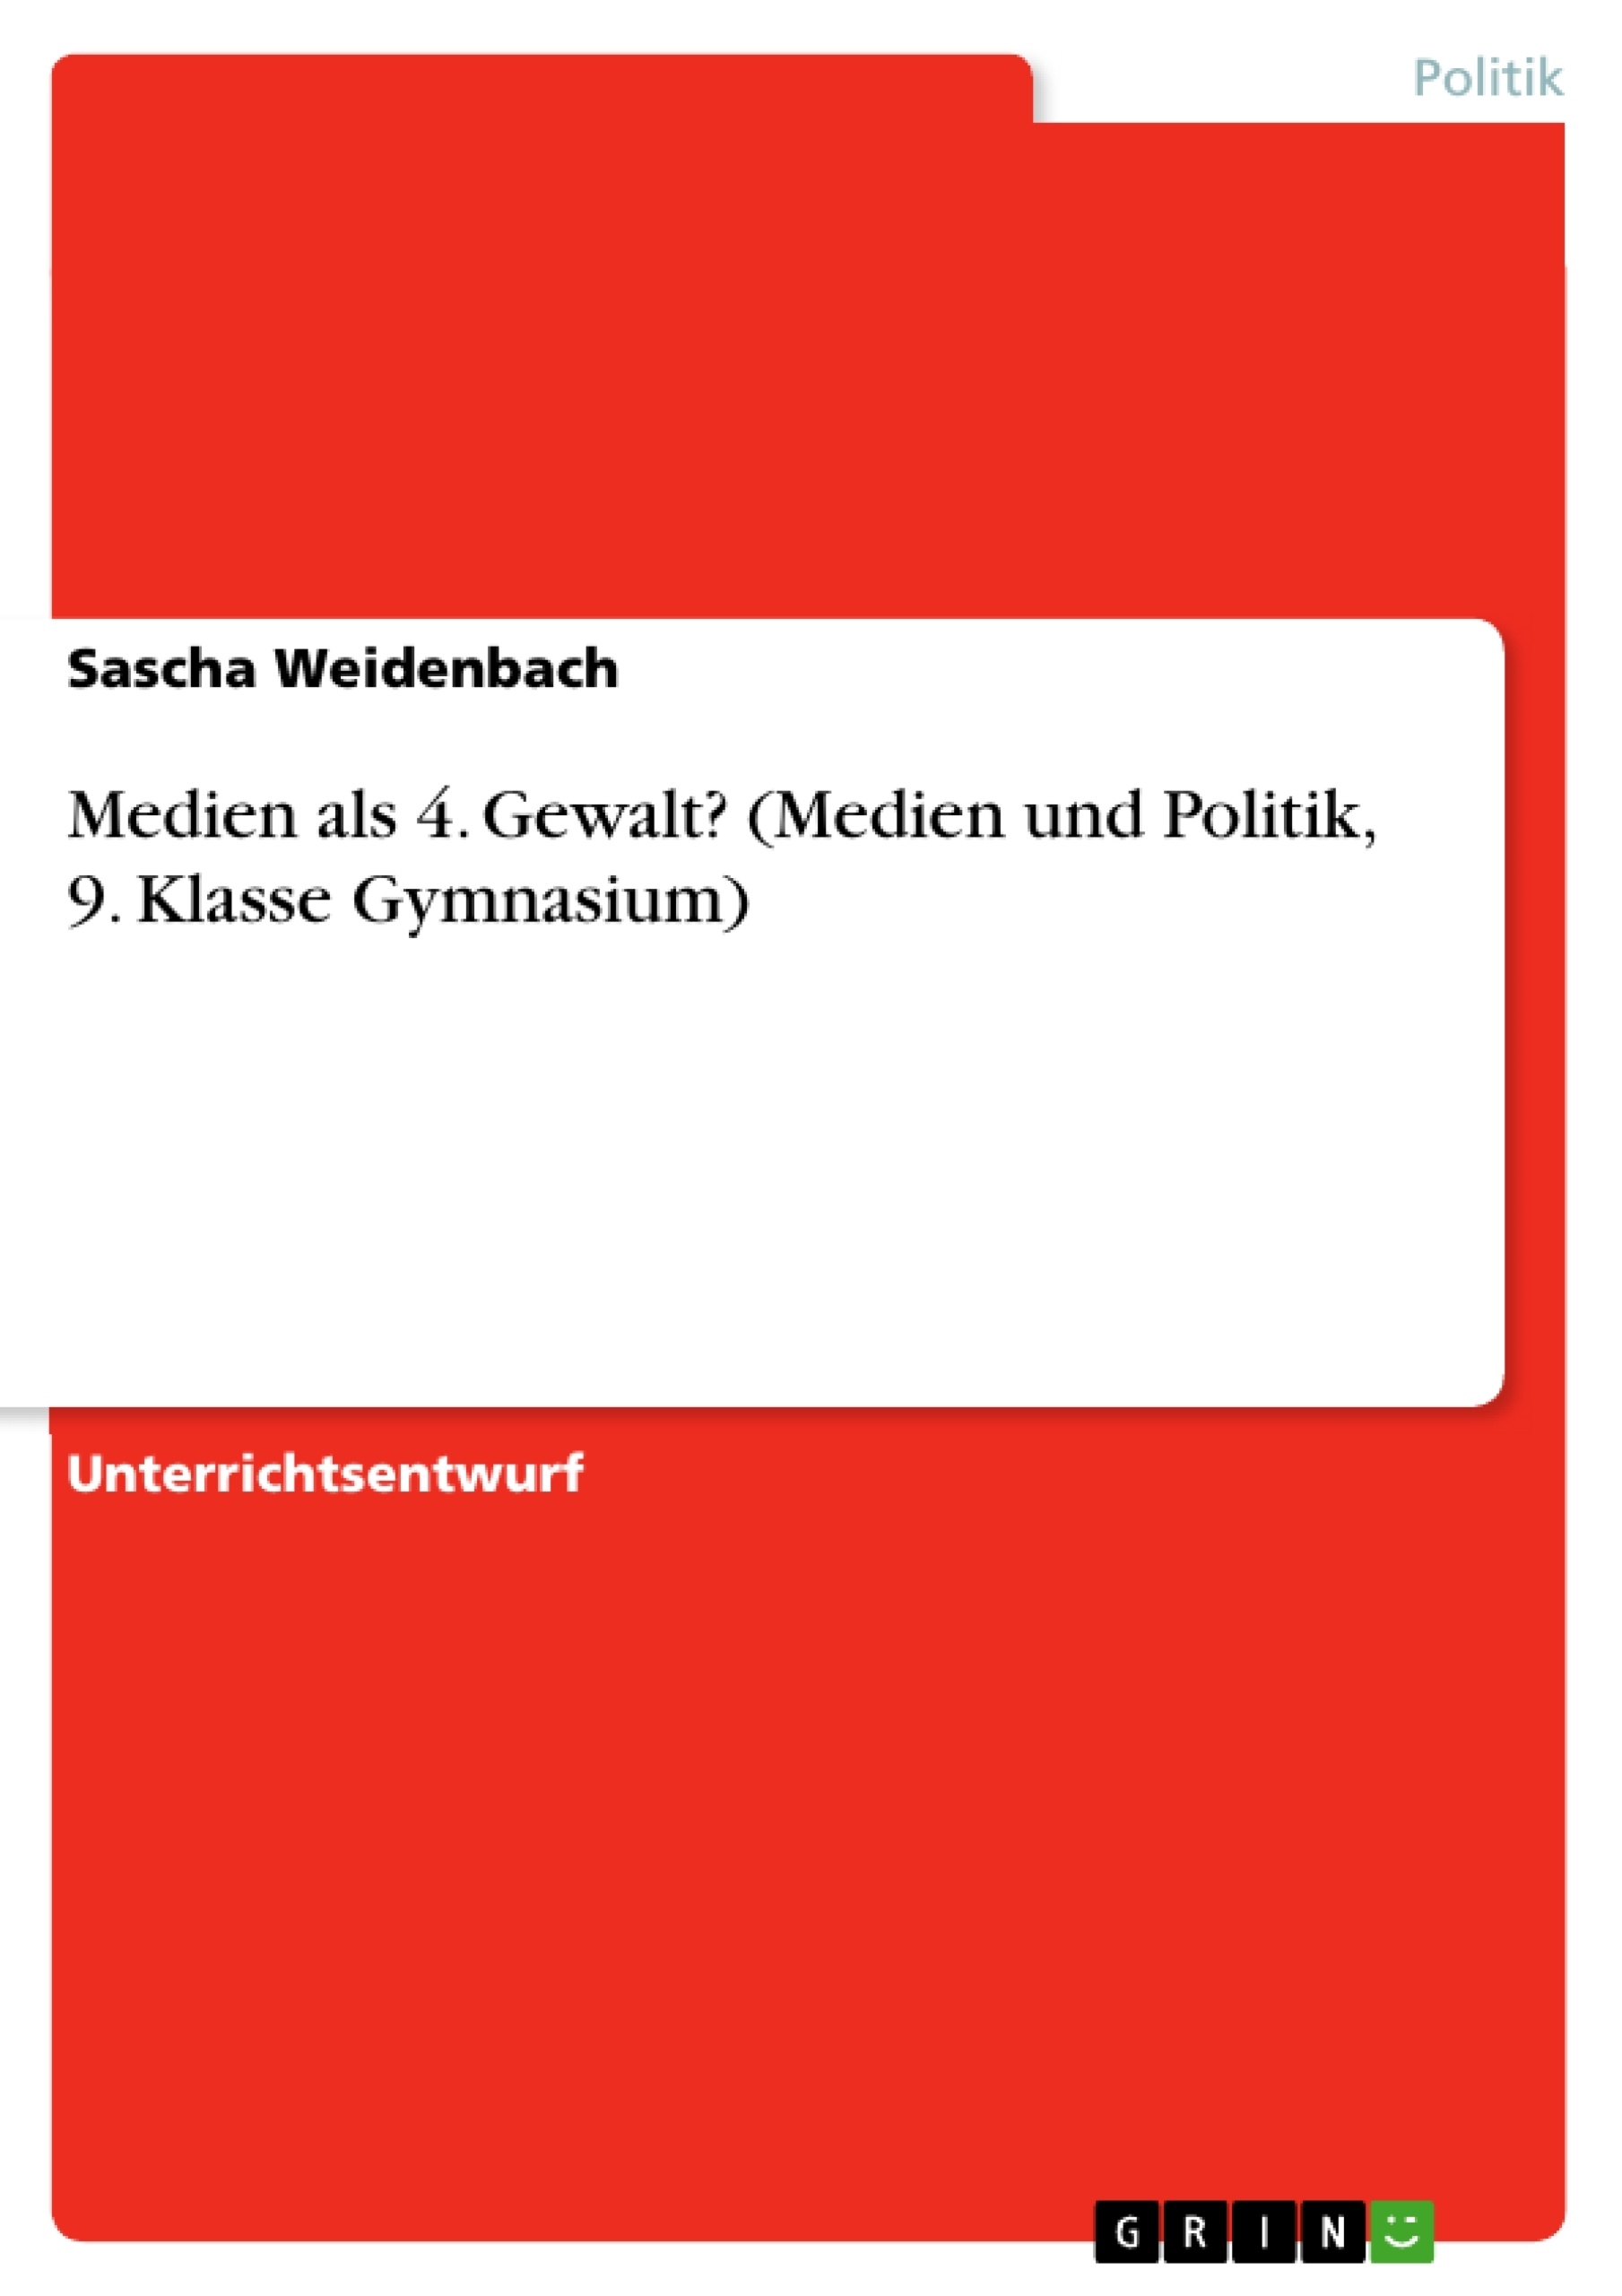 Title: Medien als 4. Gewalt? (Medien und Politik, 9. Klasse Gymnasium)